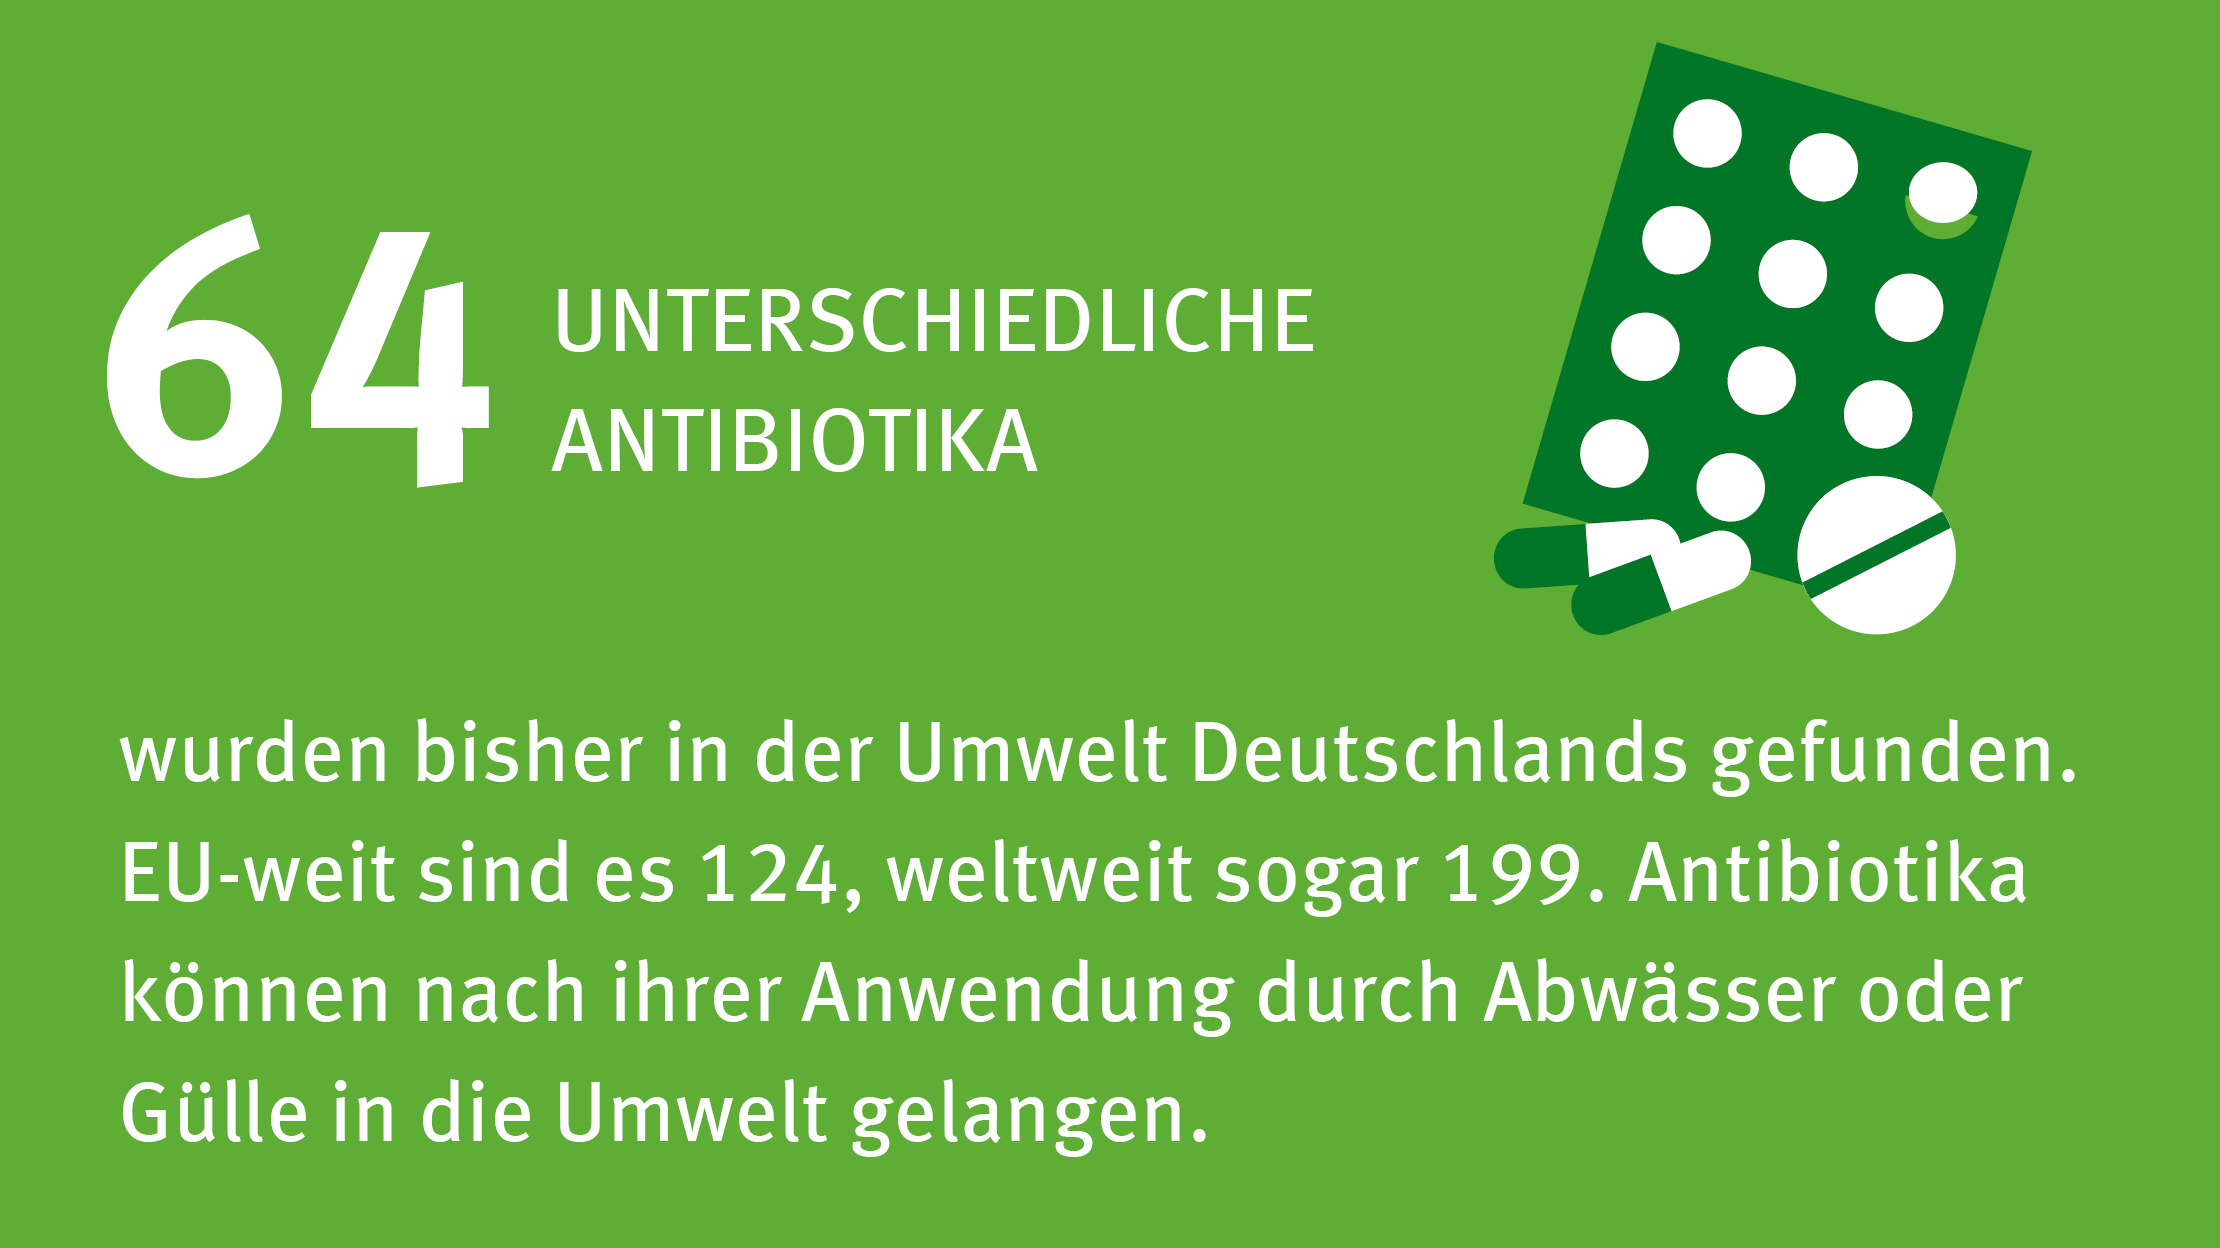 Viele Antibiotika werden in Deutschland in der Umwelt nachgewiesen.